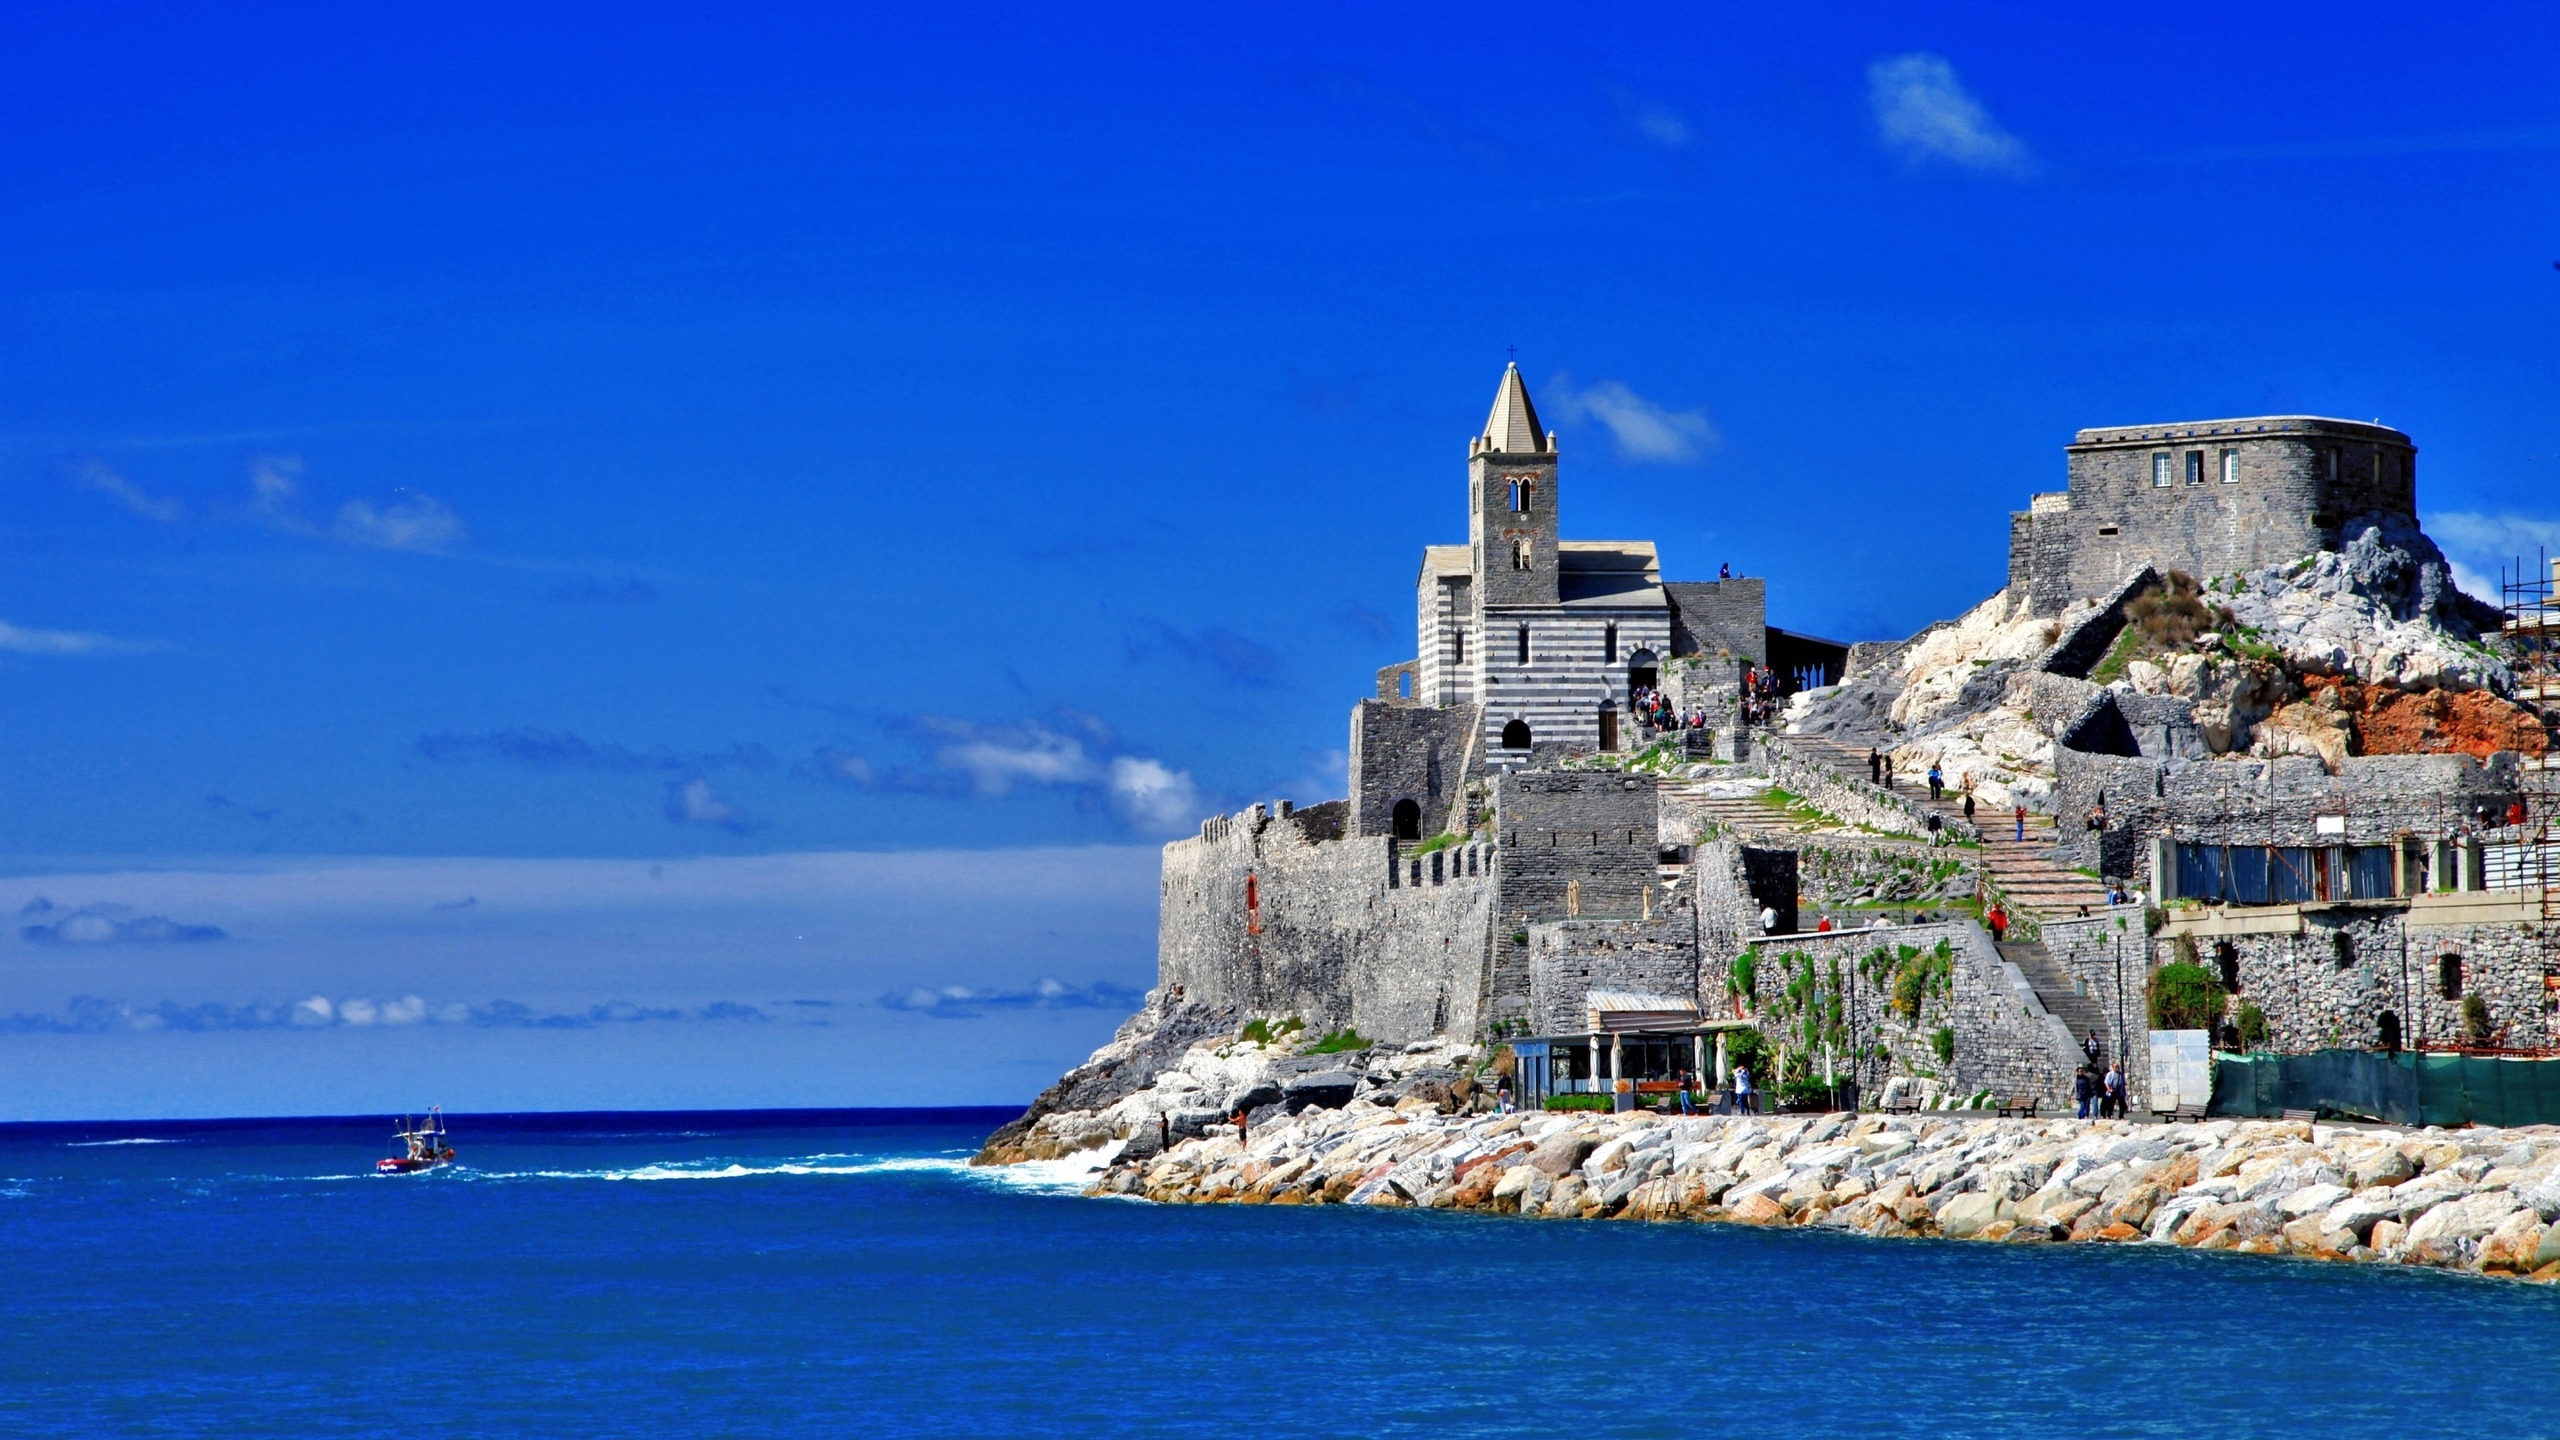 Portovenere Cinque Terre for 2560x1440 HDTV resolution